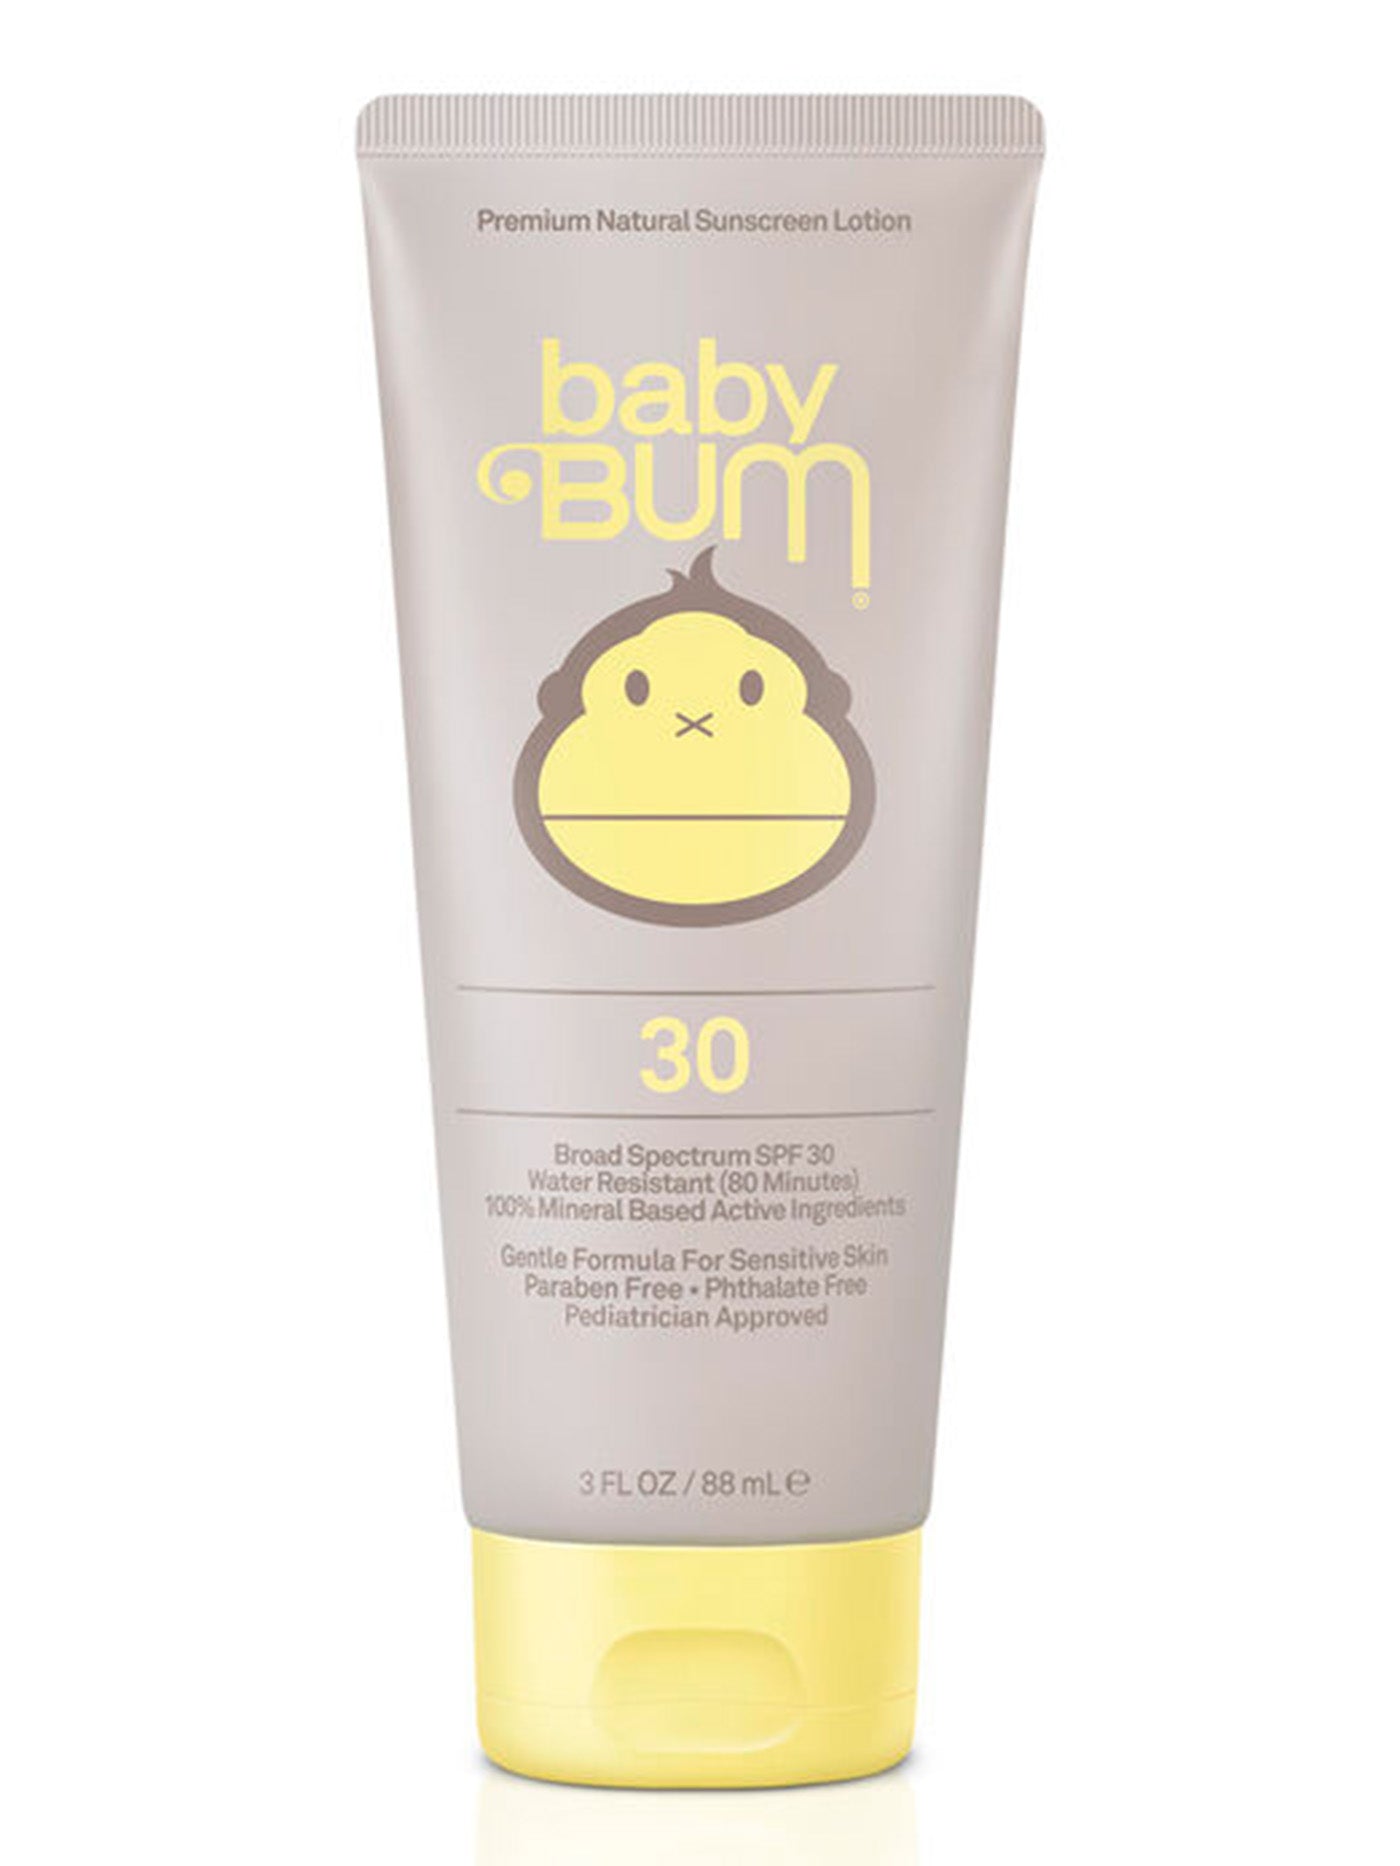 Sun Bum SPF 30 Baby Bum Premium Natural Lotion